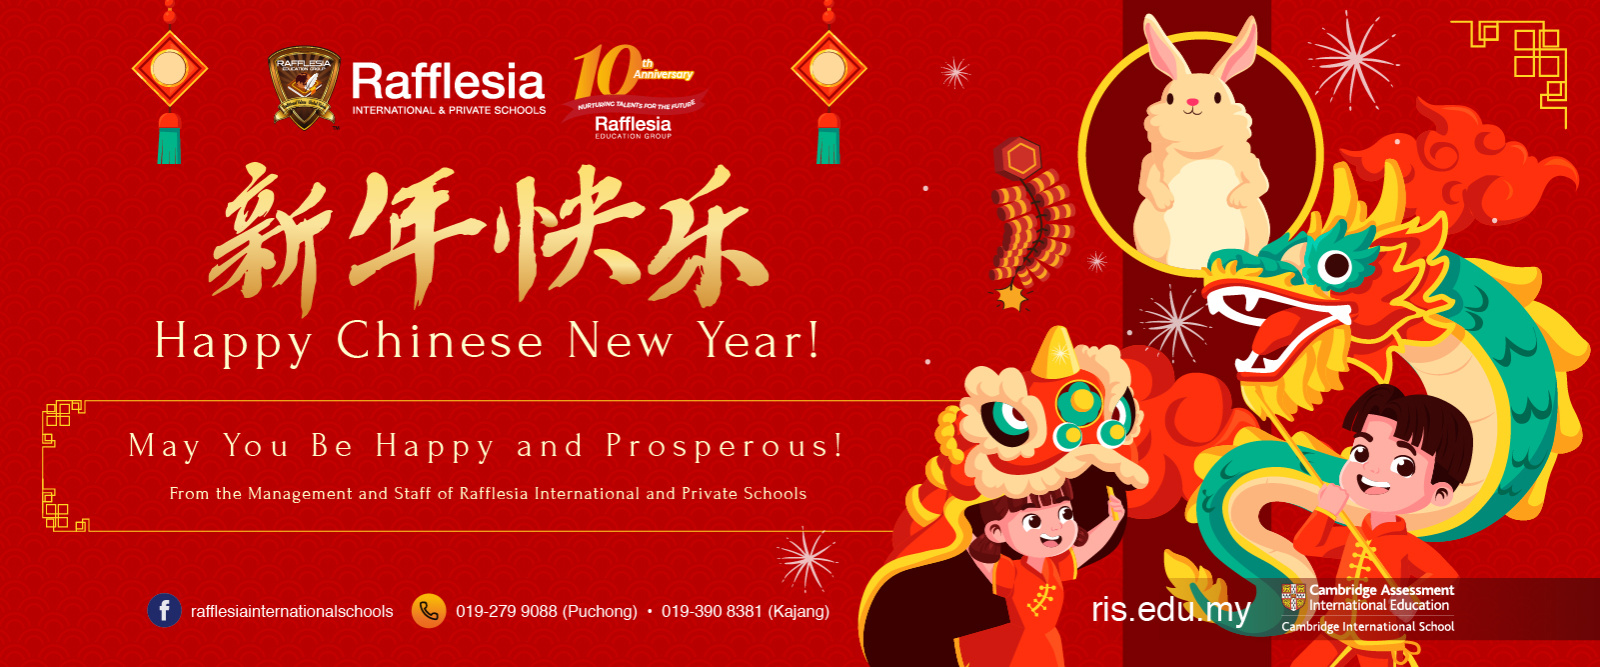 Chinese New Year 2023!